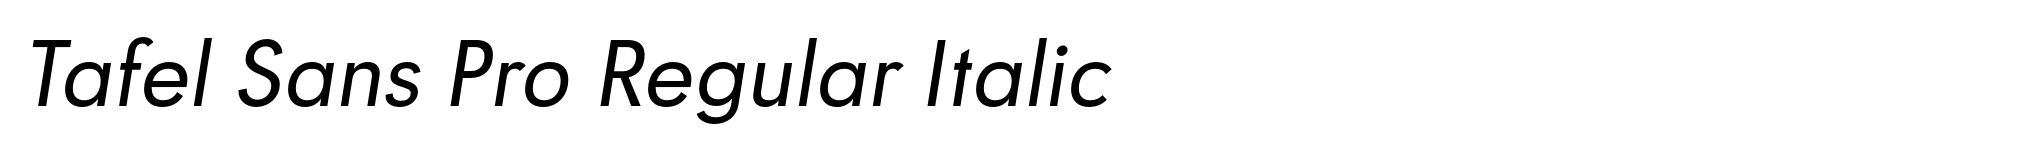 Tafel Sans Pro Regular Italic image